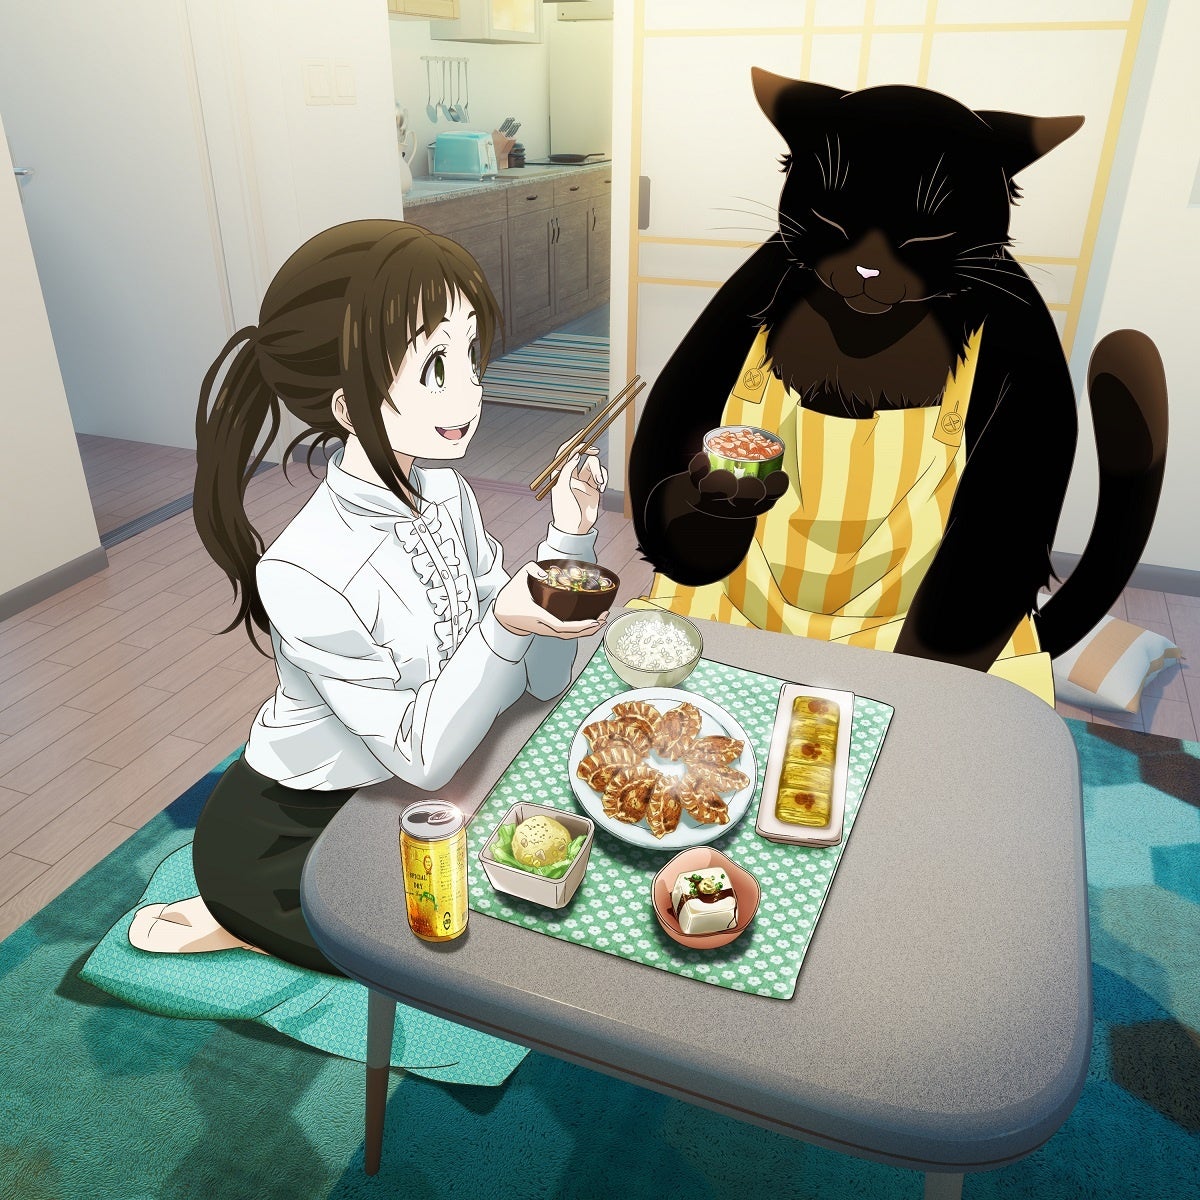 TVアニメ「デキる猫は今日も憂鬱」エンディングテーマ、asmi「破壊前夜のこと」が配信リリース！8月30日(水)にCD発売も決定！